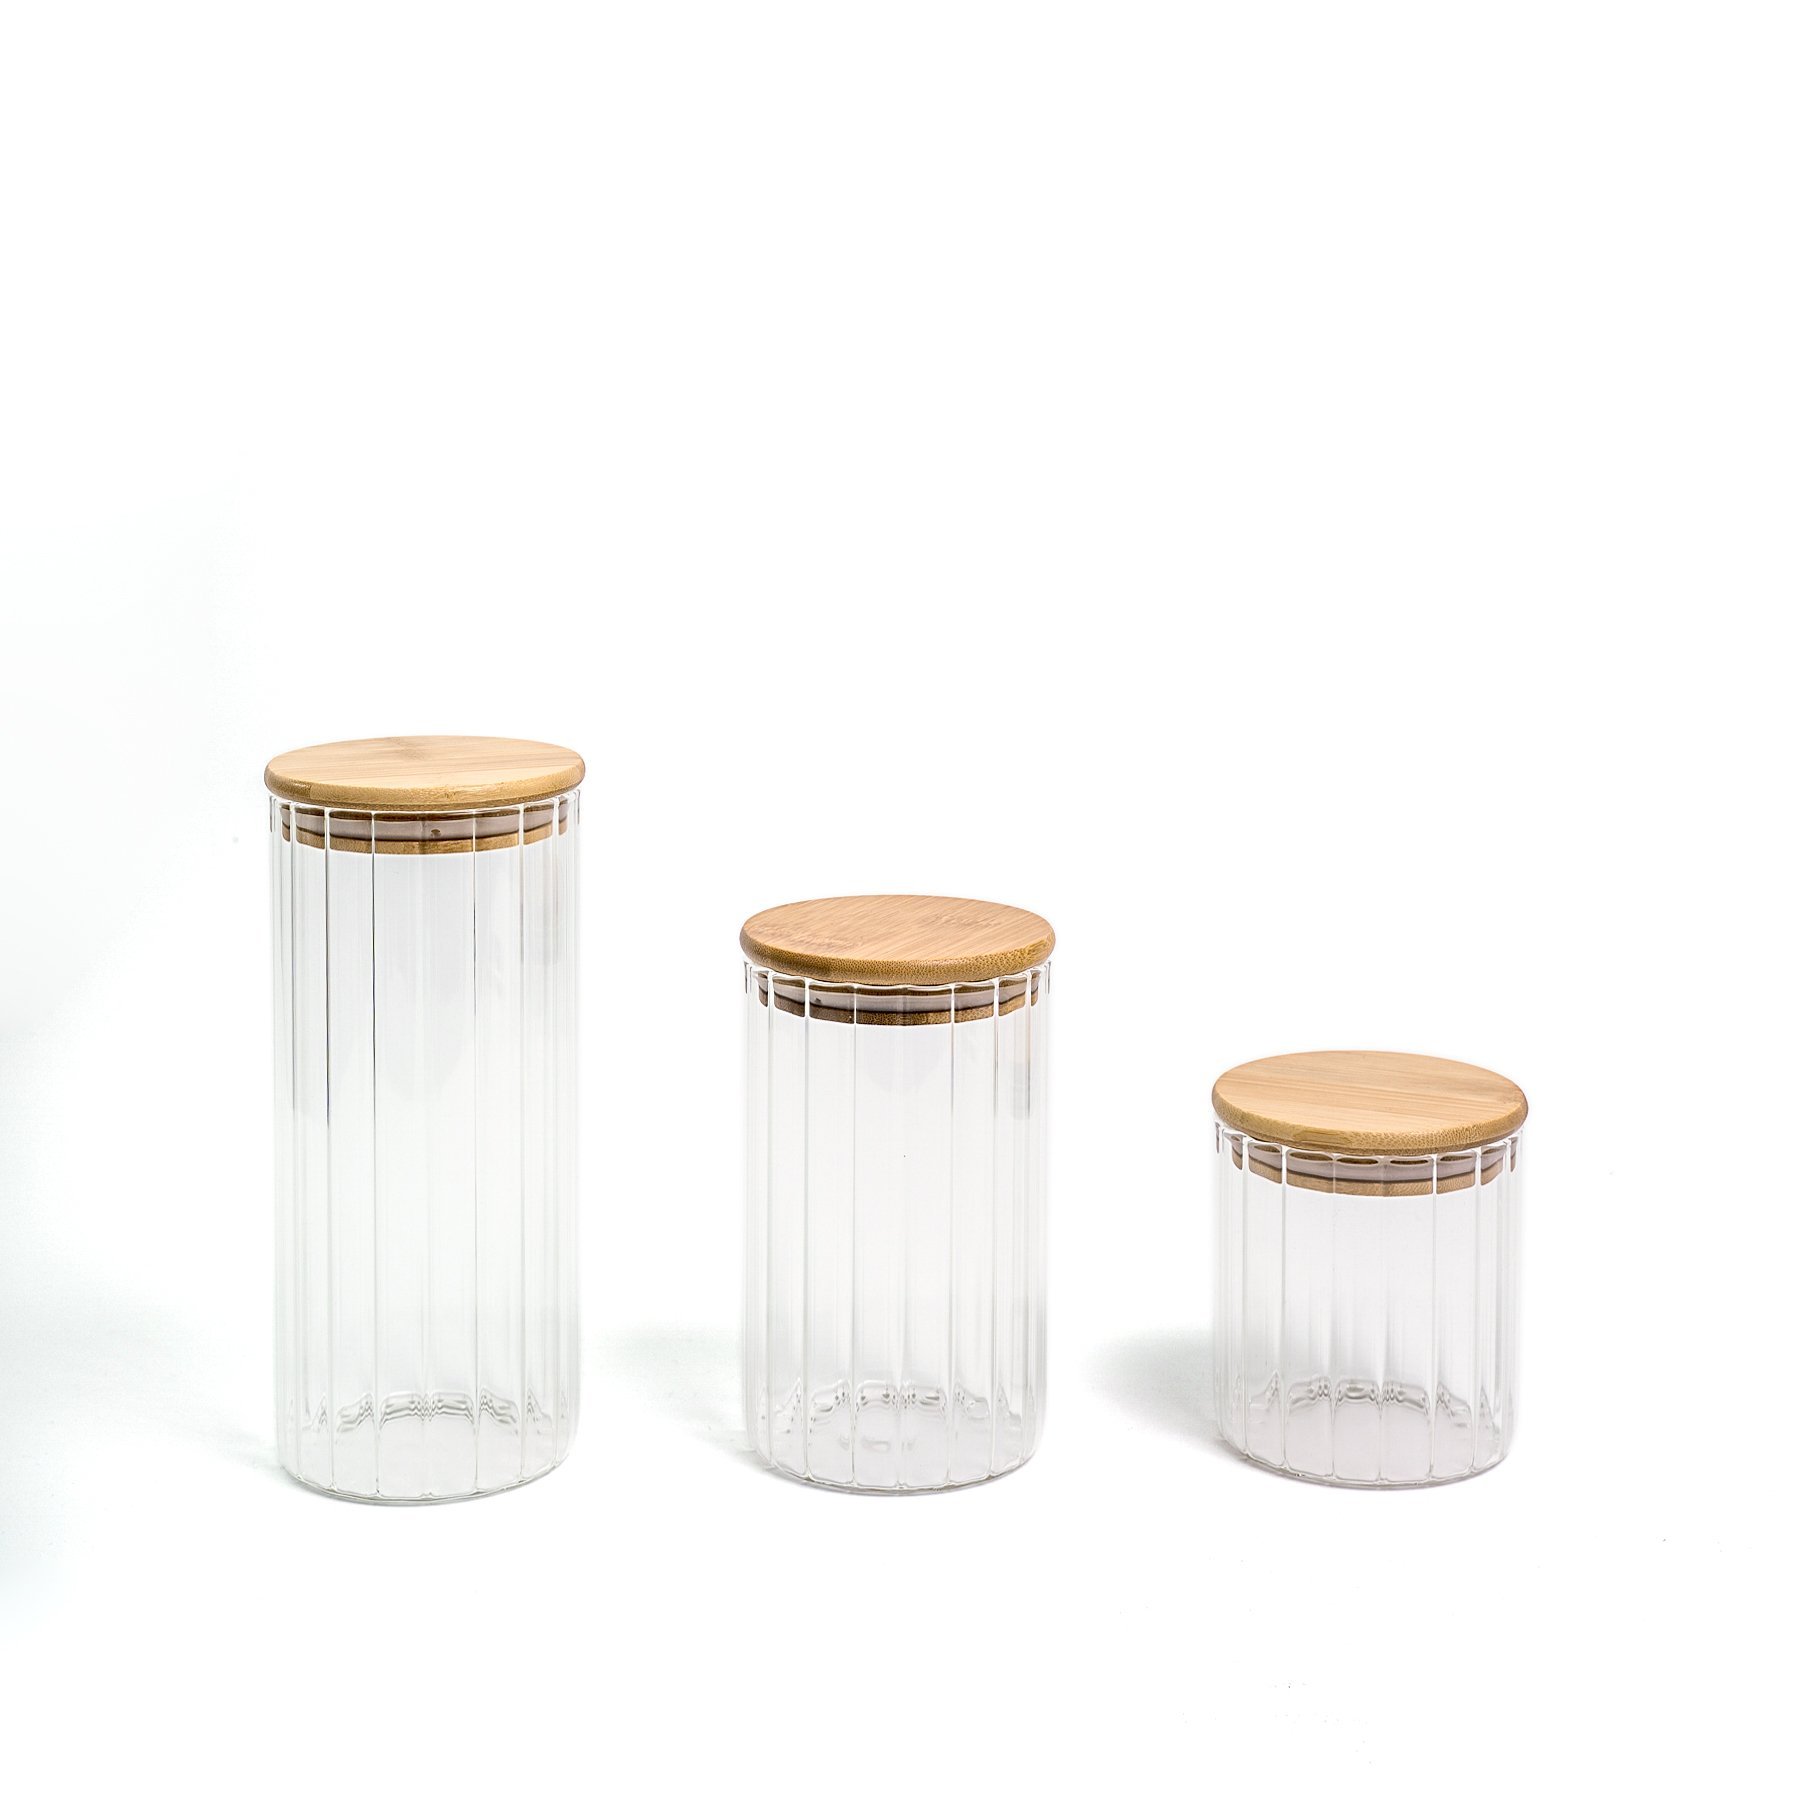 Pote 500ml de vidro canelado com tampa de bambu de mantimento - Oikos - 6